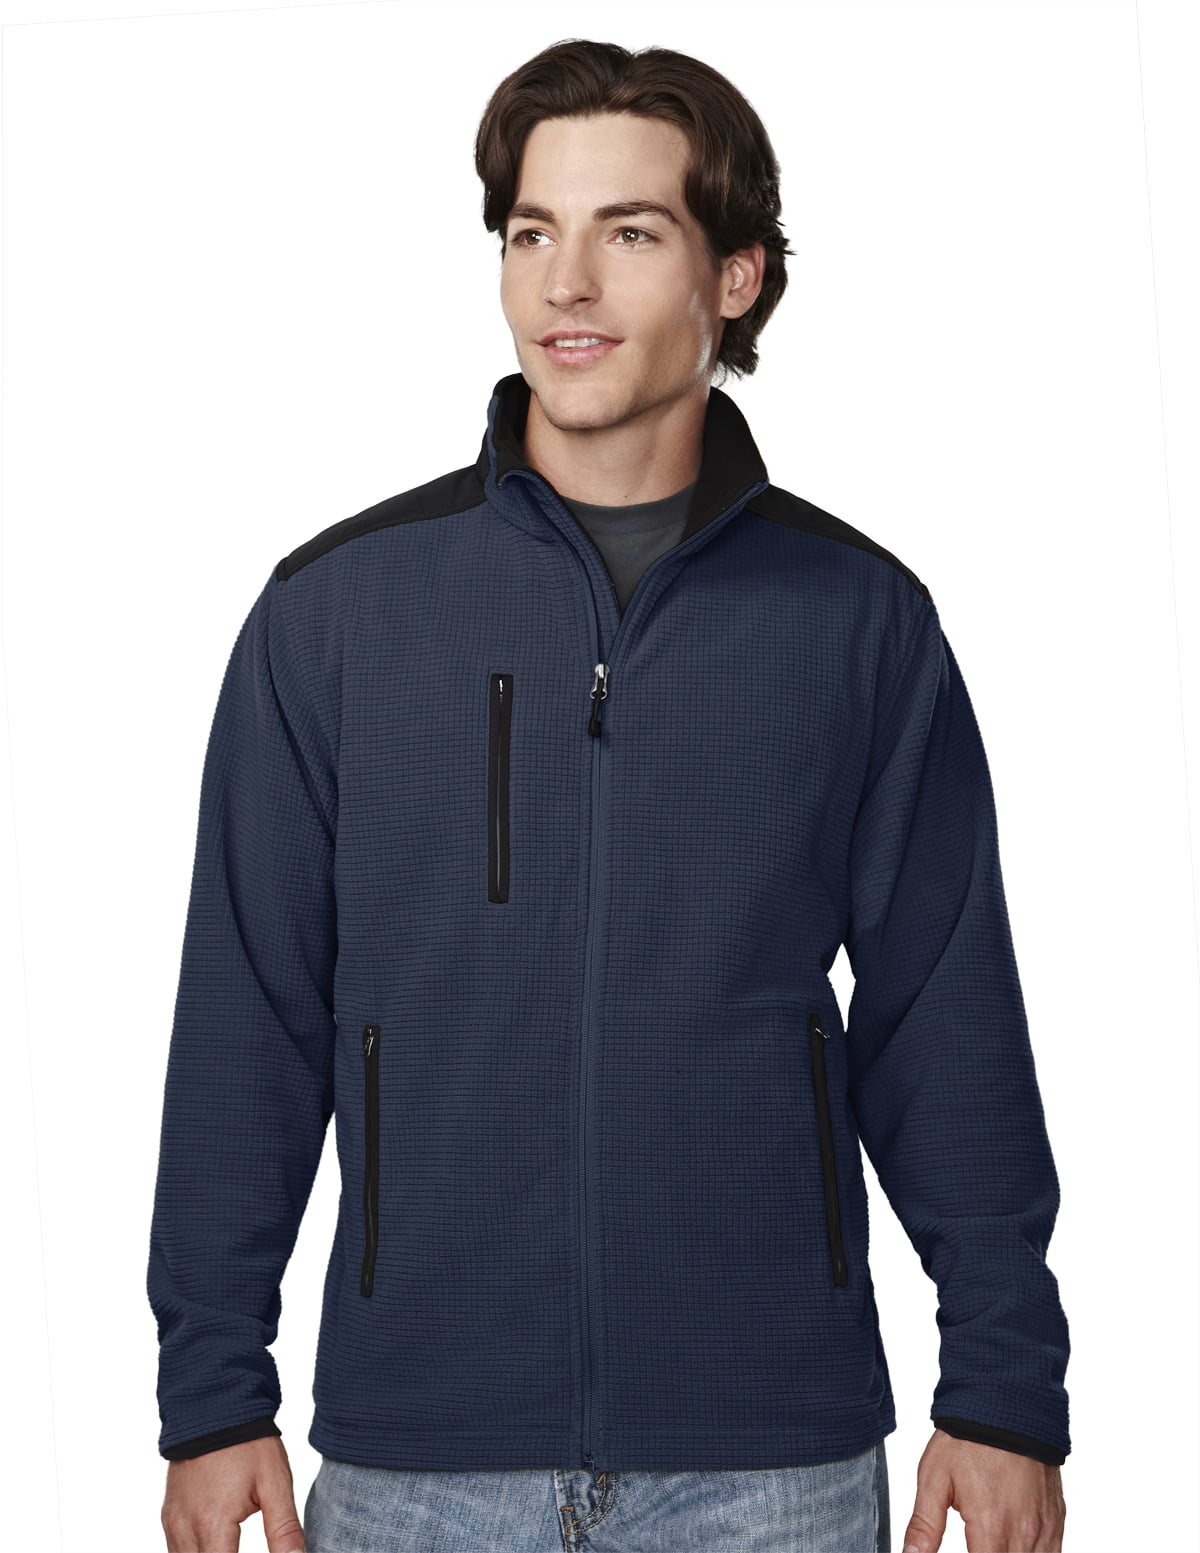 Tri-Mountain - Tri-Mountain Men's 100% Polyester Knit Fleece Jacket ...